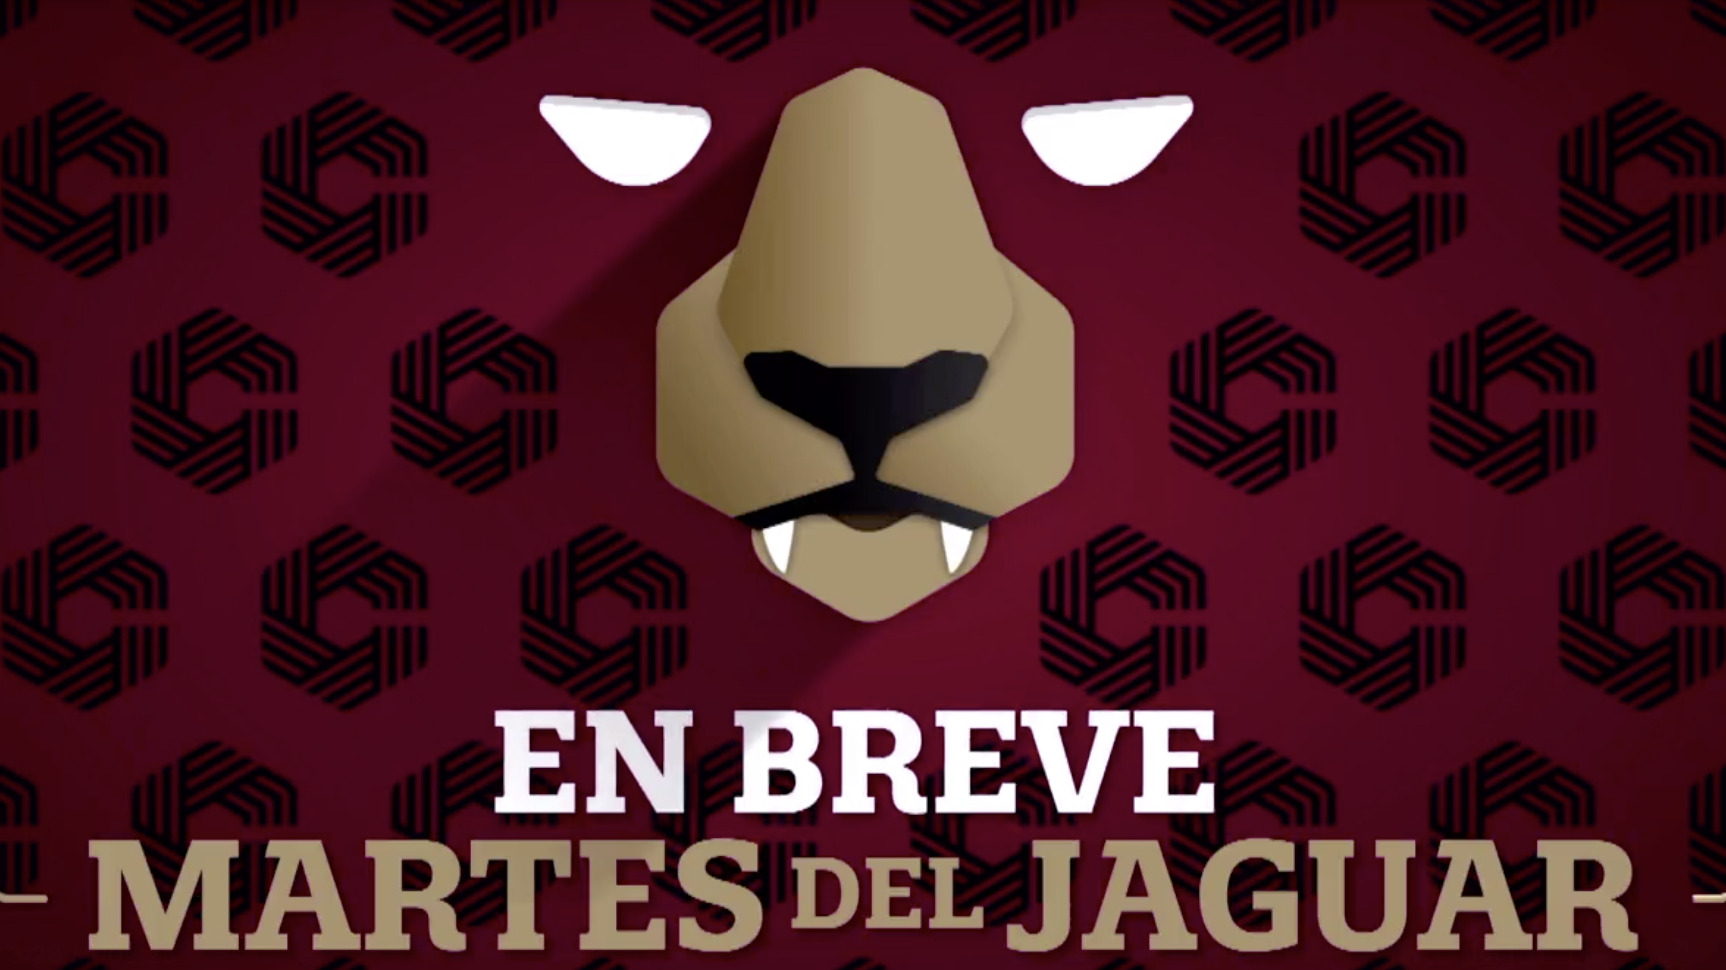 Reforma electoral y Martes del jaguar